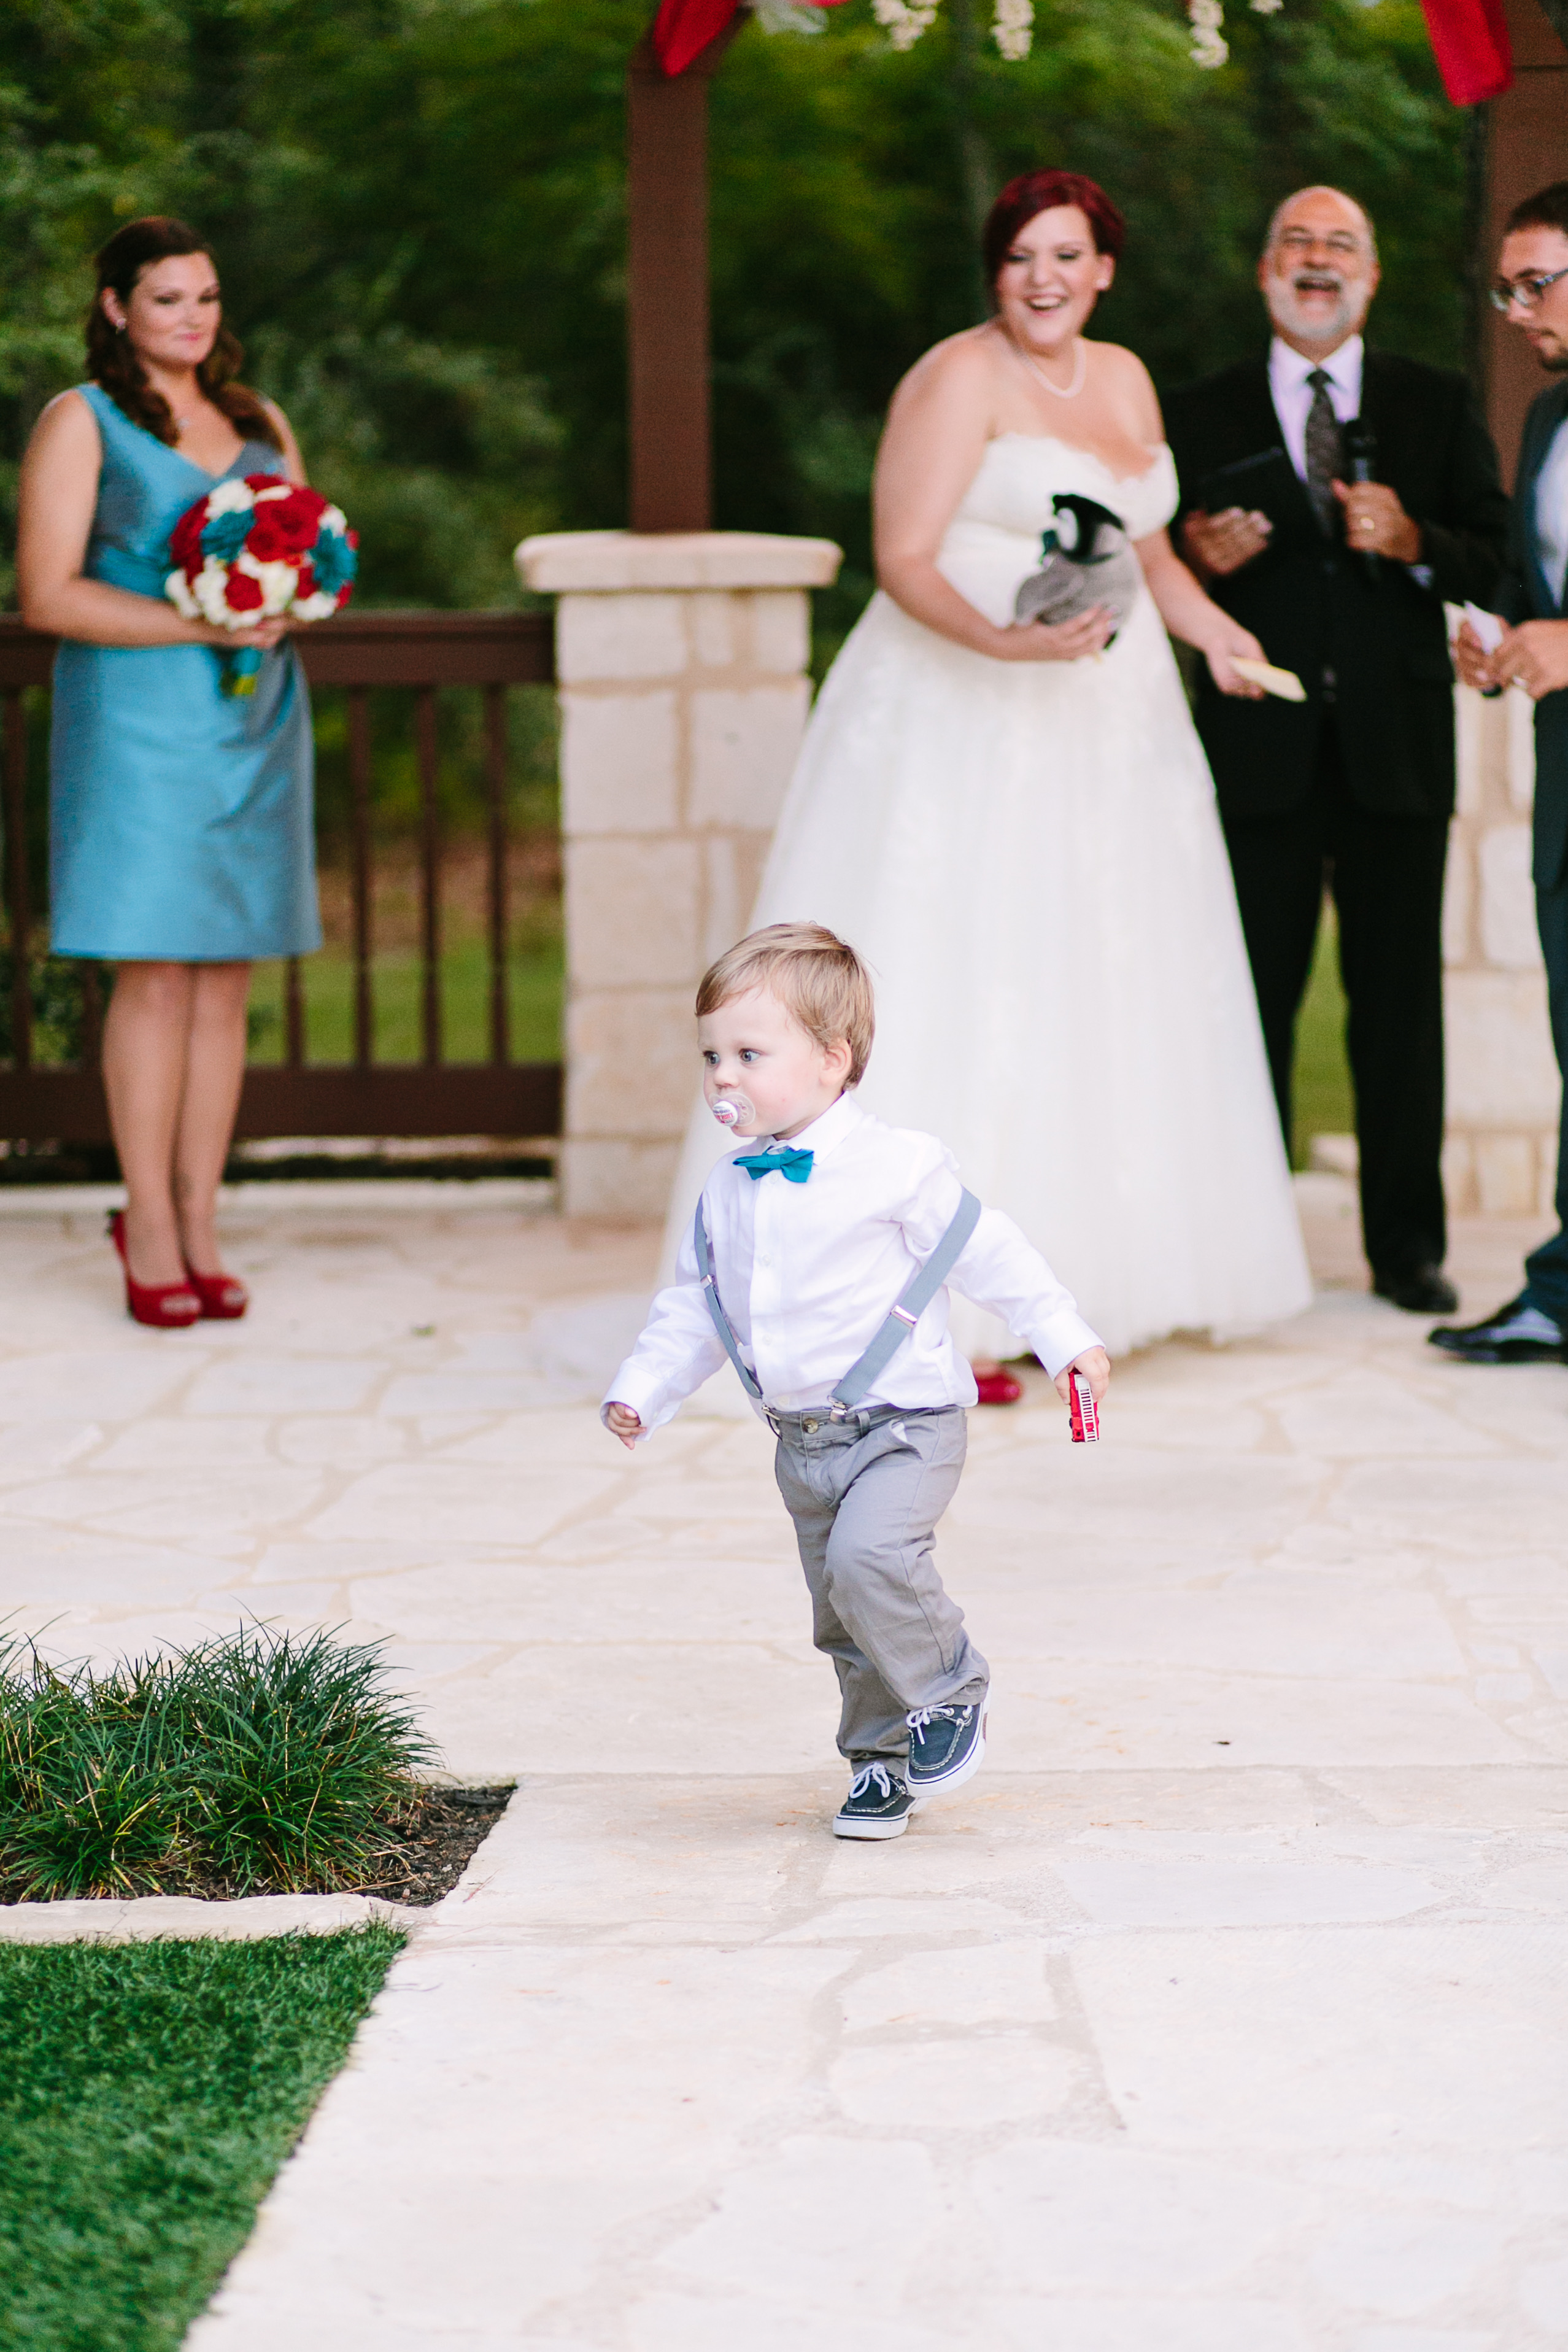 A toddler holding a fire truck runs from a wedding alter